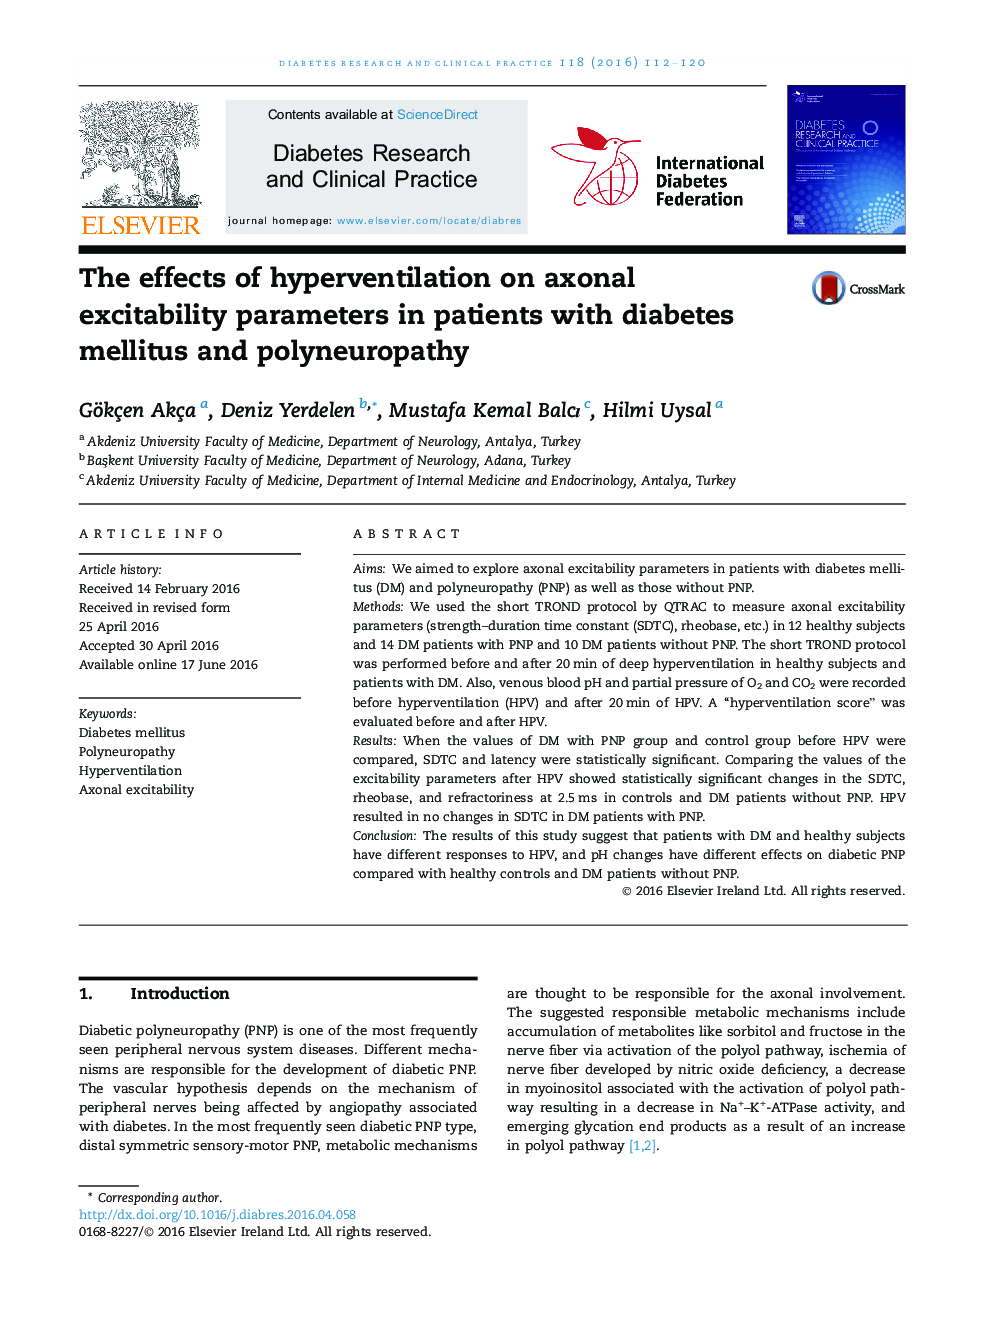 اثرات هیپنرنتالیال بر پارامترهای تحرک پذیری آکسون در بیماران مبتلا به دیابت و پلی ¬ یوپاتی 